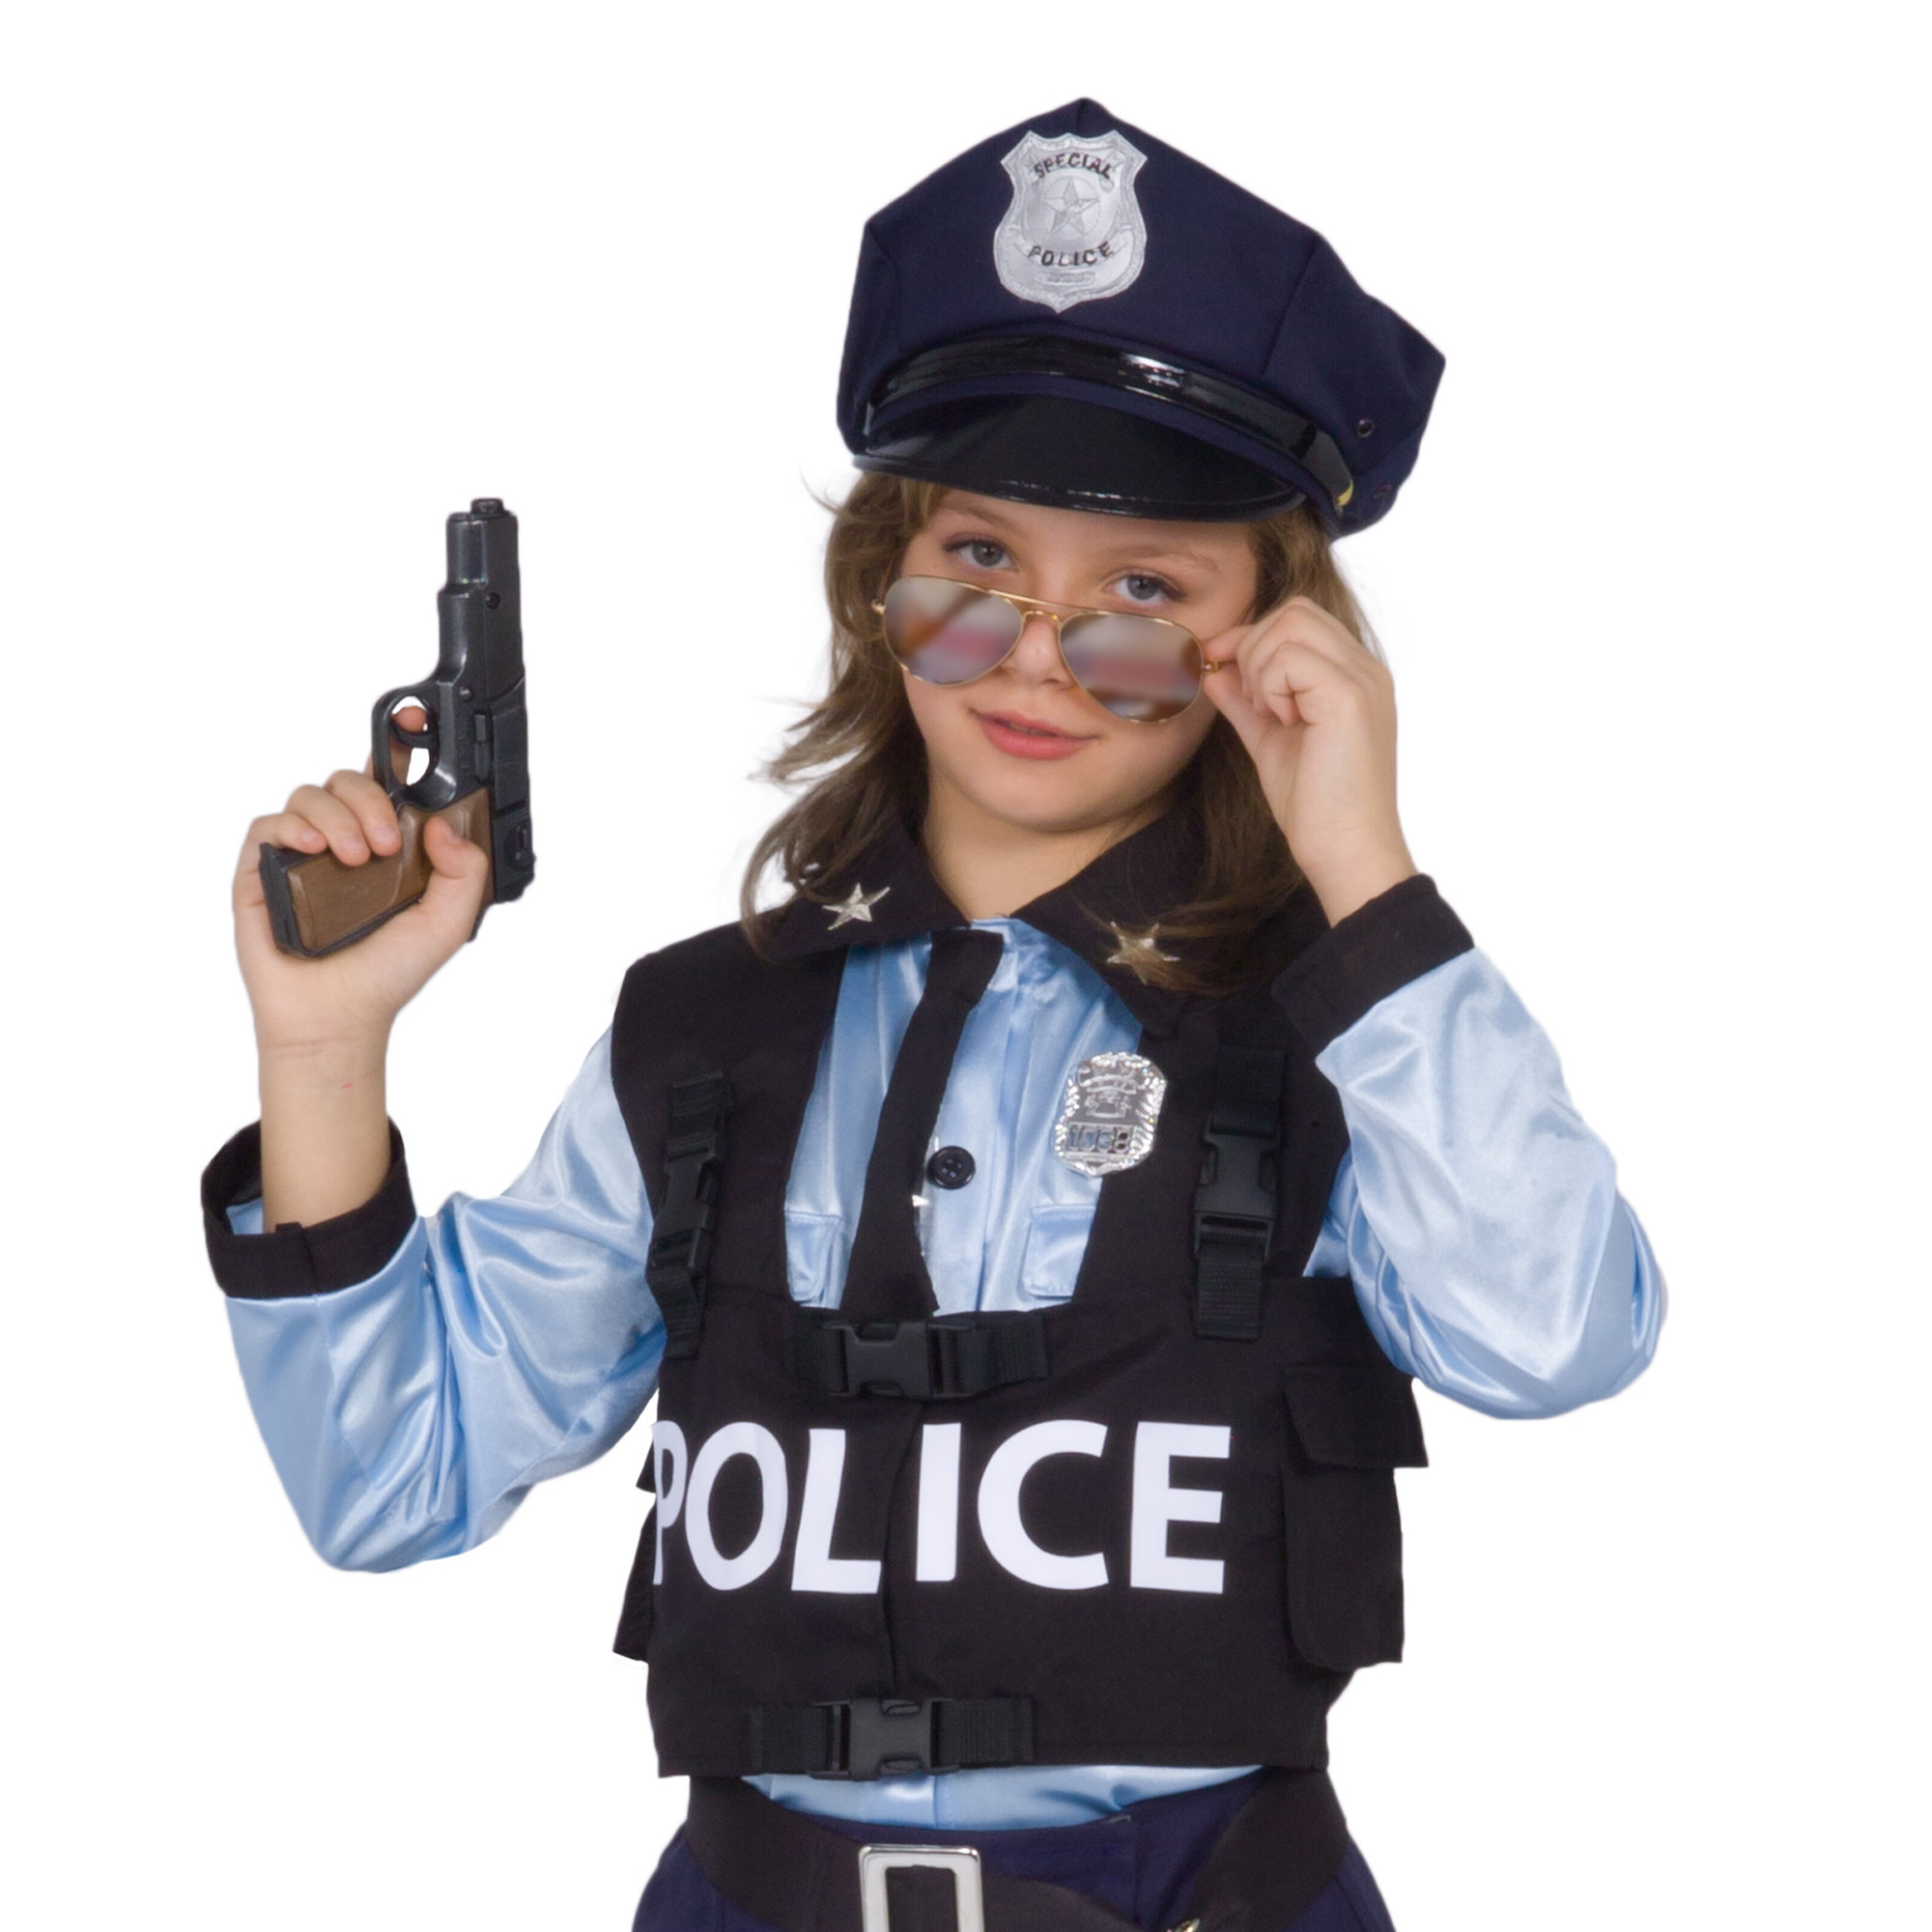 Ciao Travestimento Costume di Carnevale Poliziotta Special Police Bambina